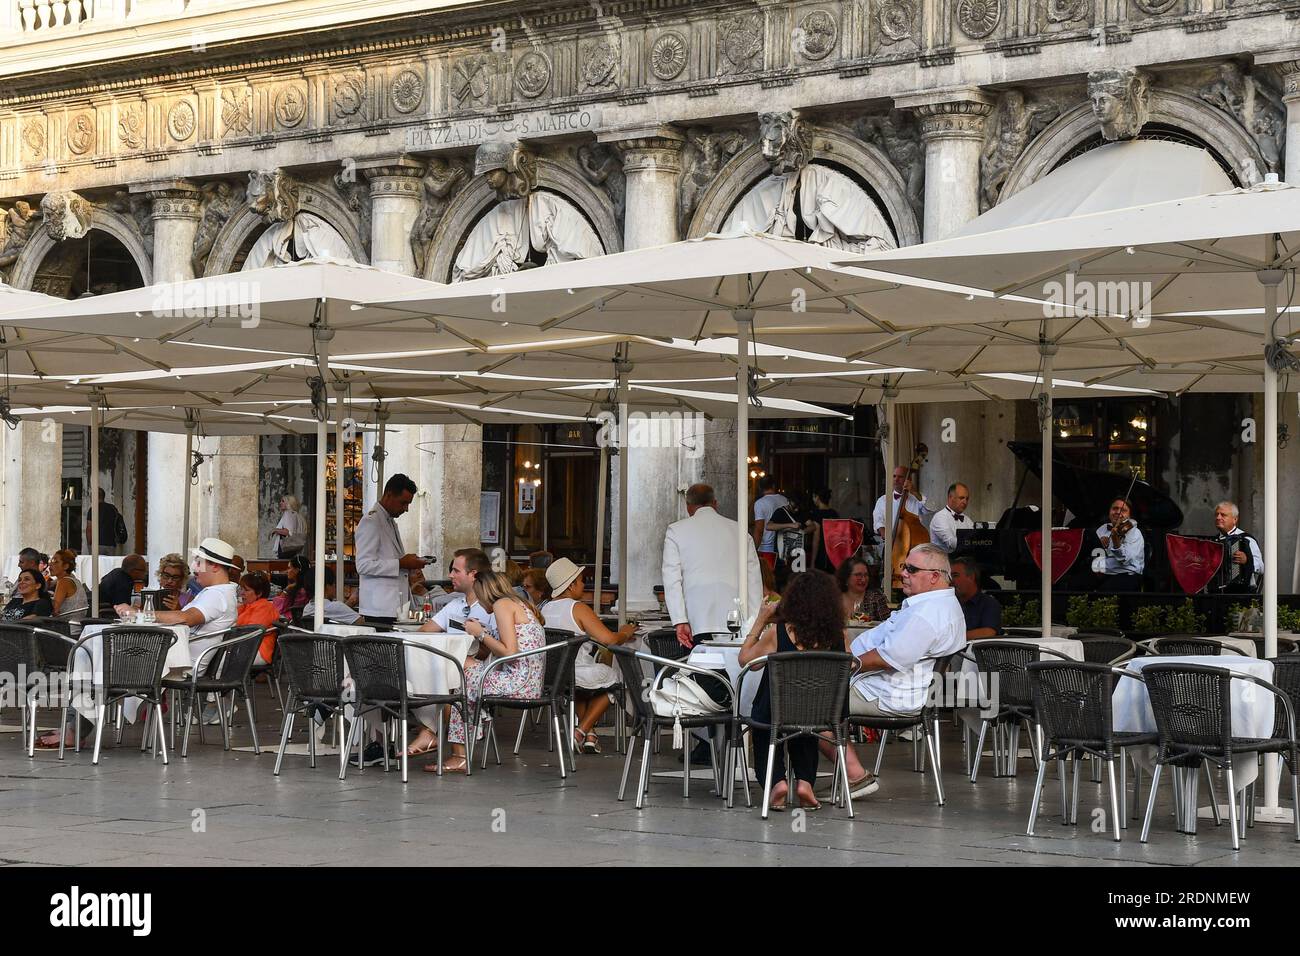 Esterno del famoso caffè Florian, fondato nel 1720 in Piazza San Marco, una delle più antiche caffetterie del mondo, Venezia, Veneto, Italia Foto Stock